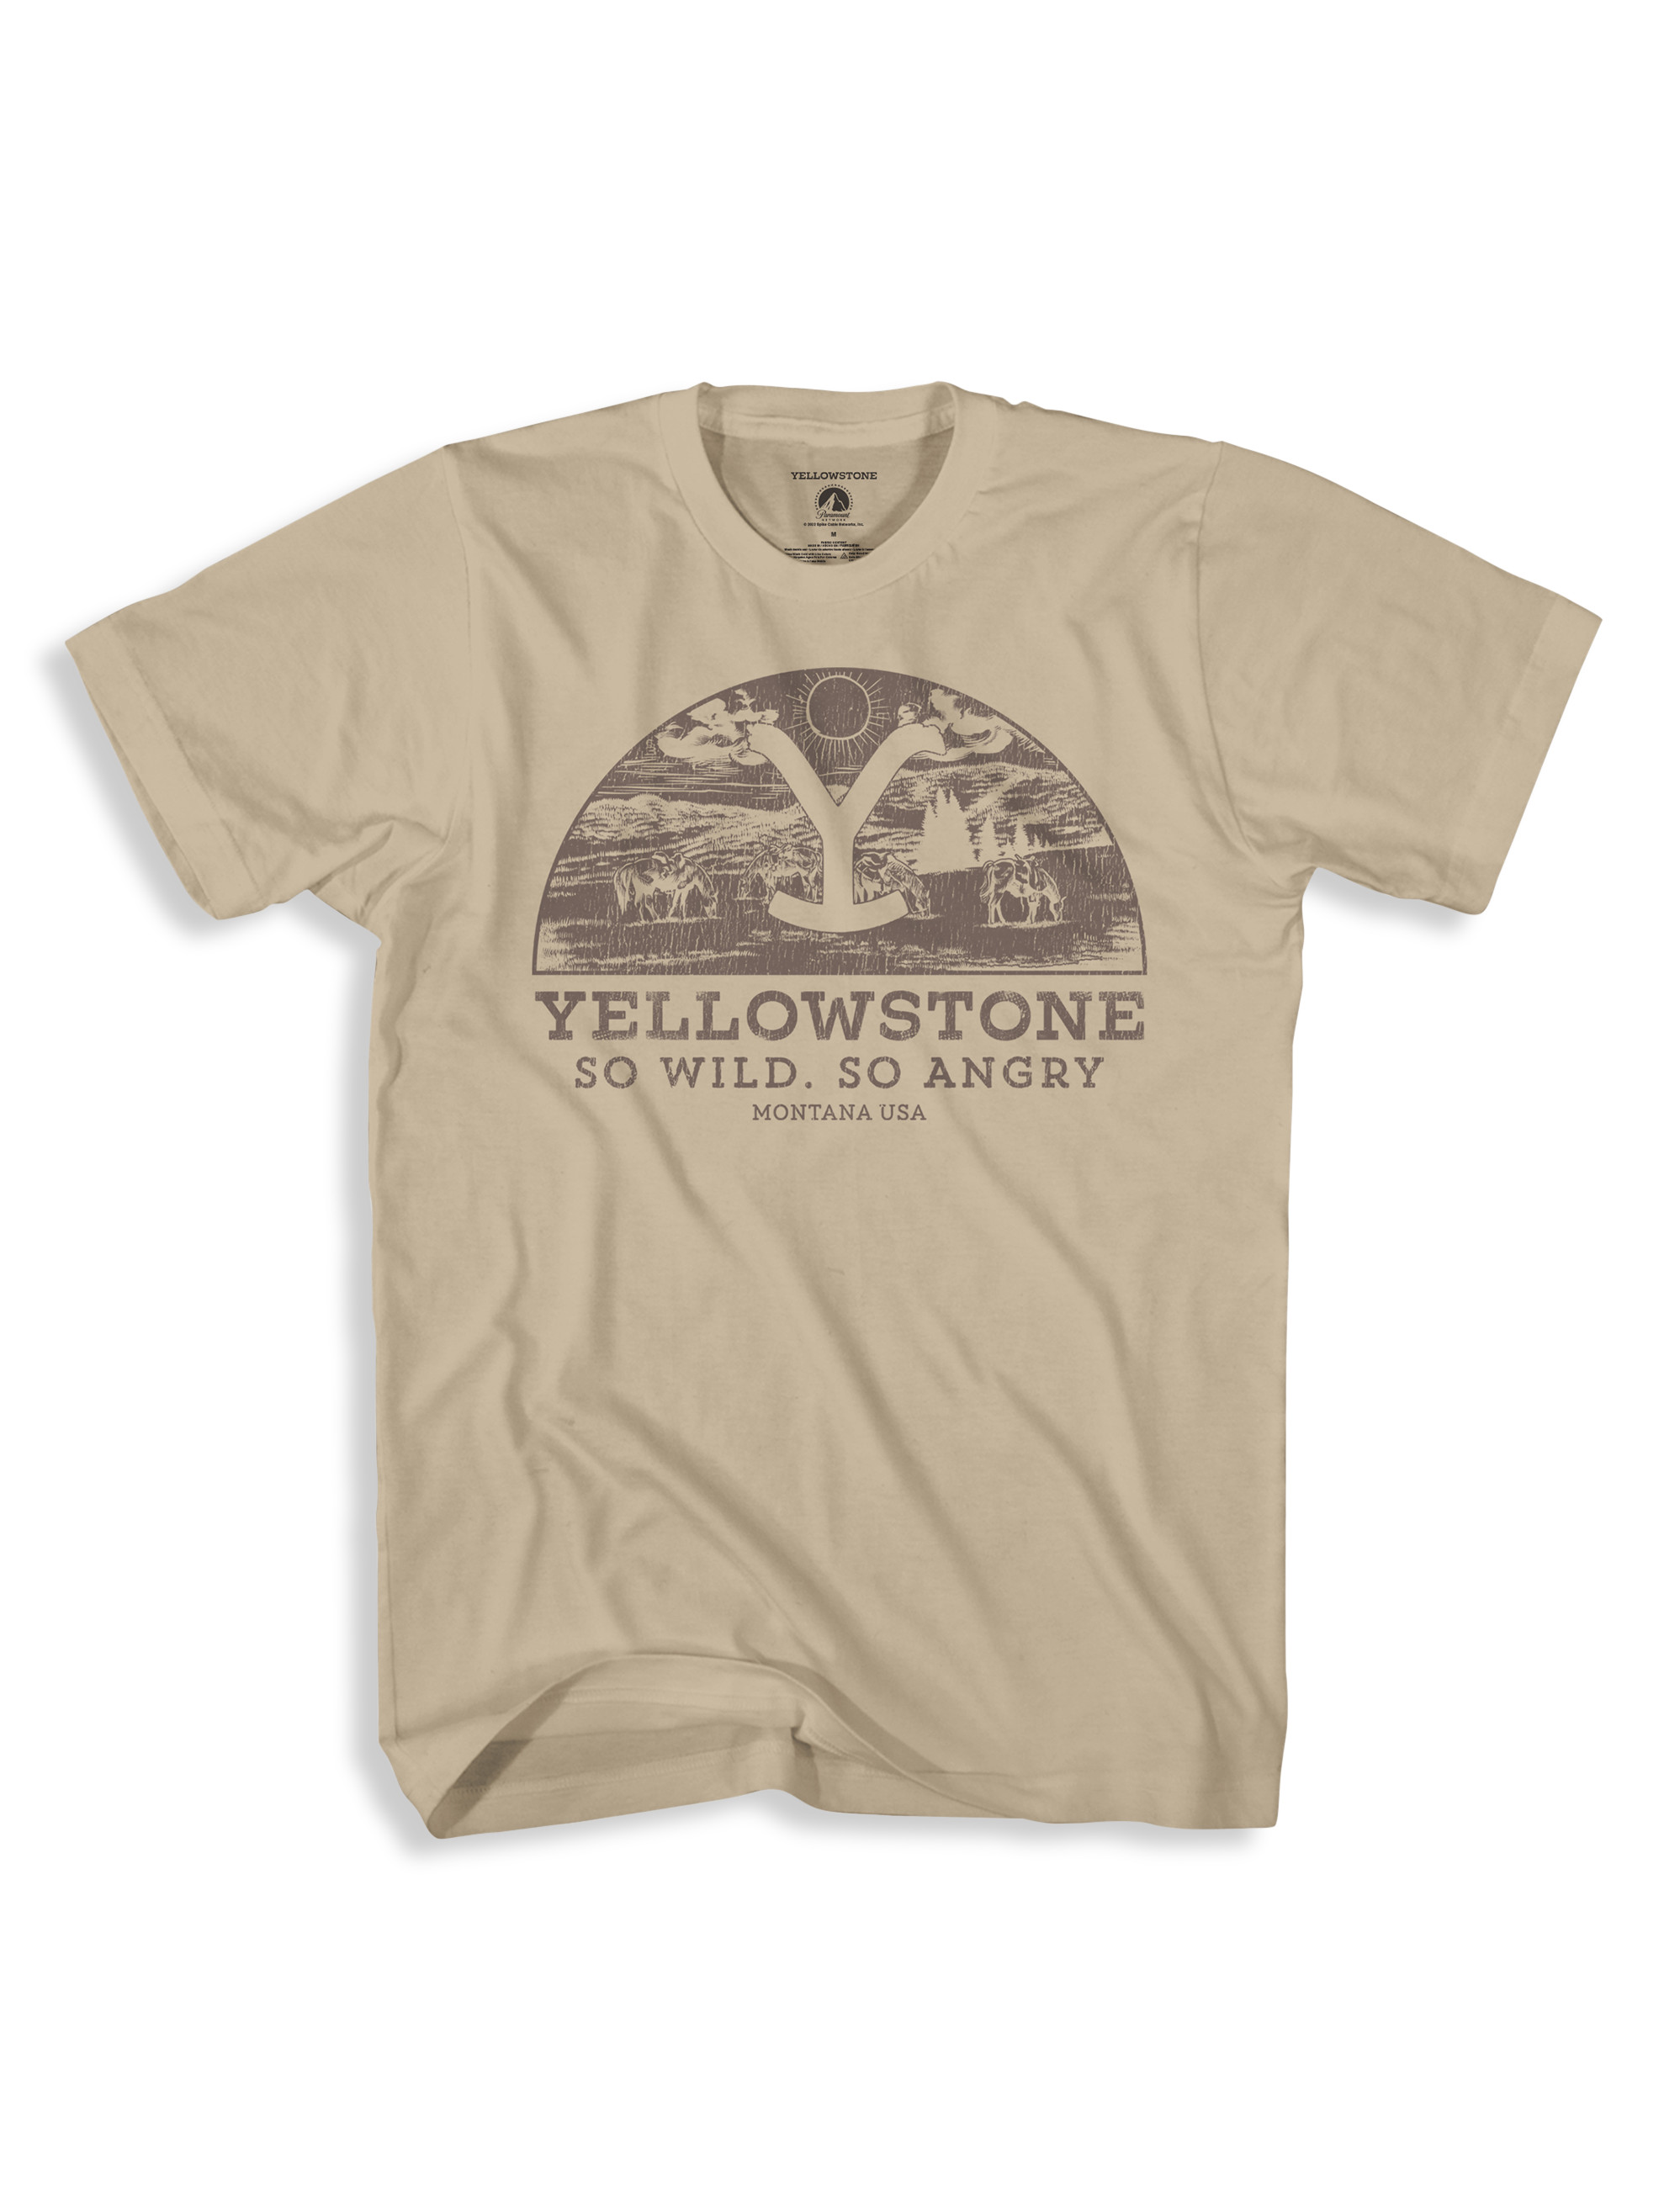 Yellowstone Graphic Tee